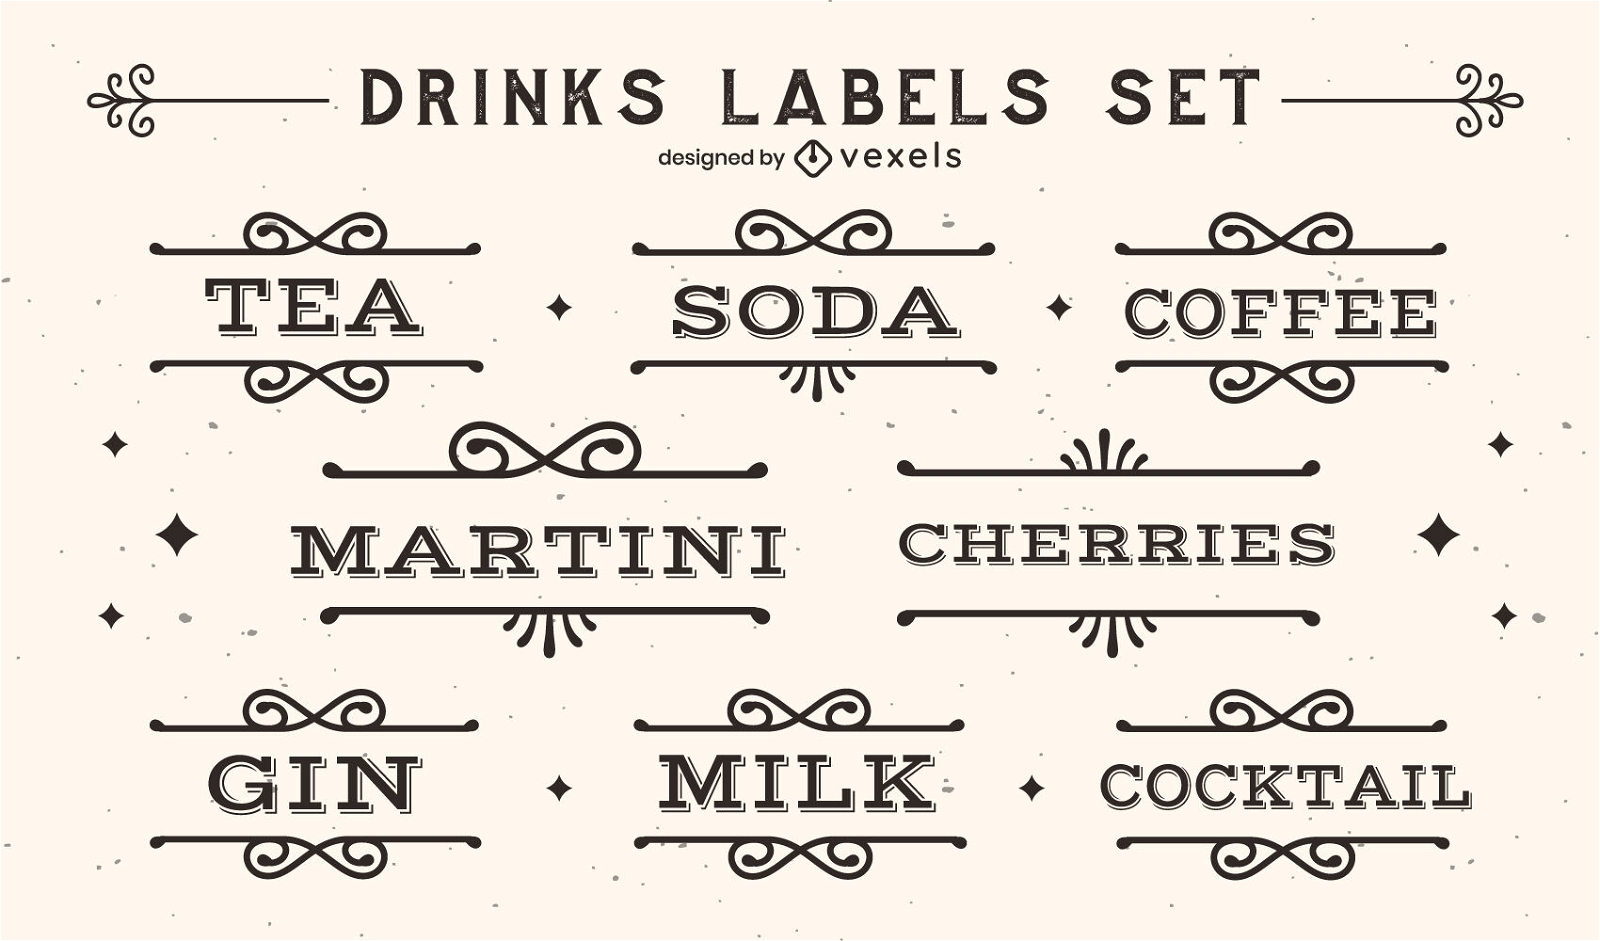 Drinks labels vintage set